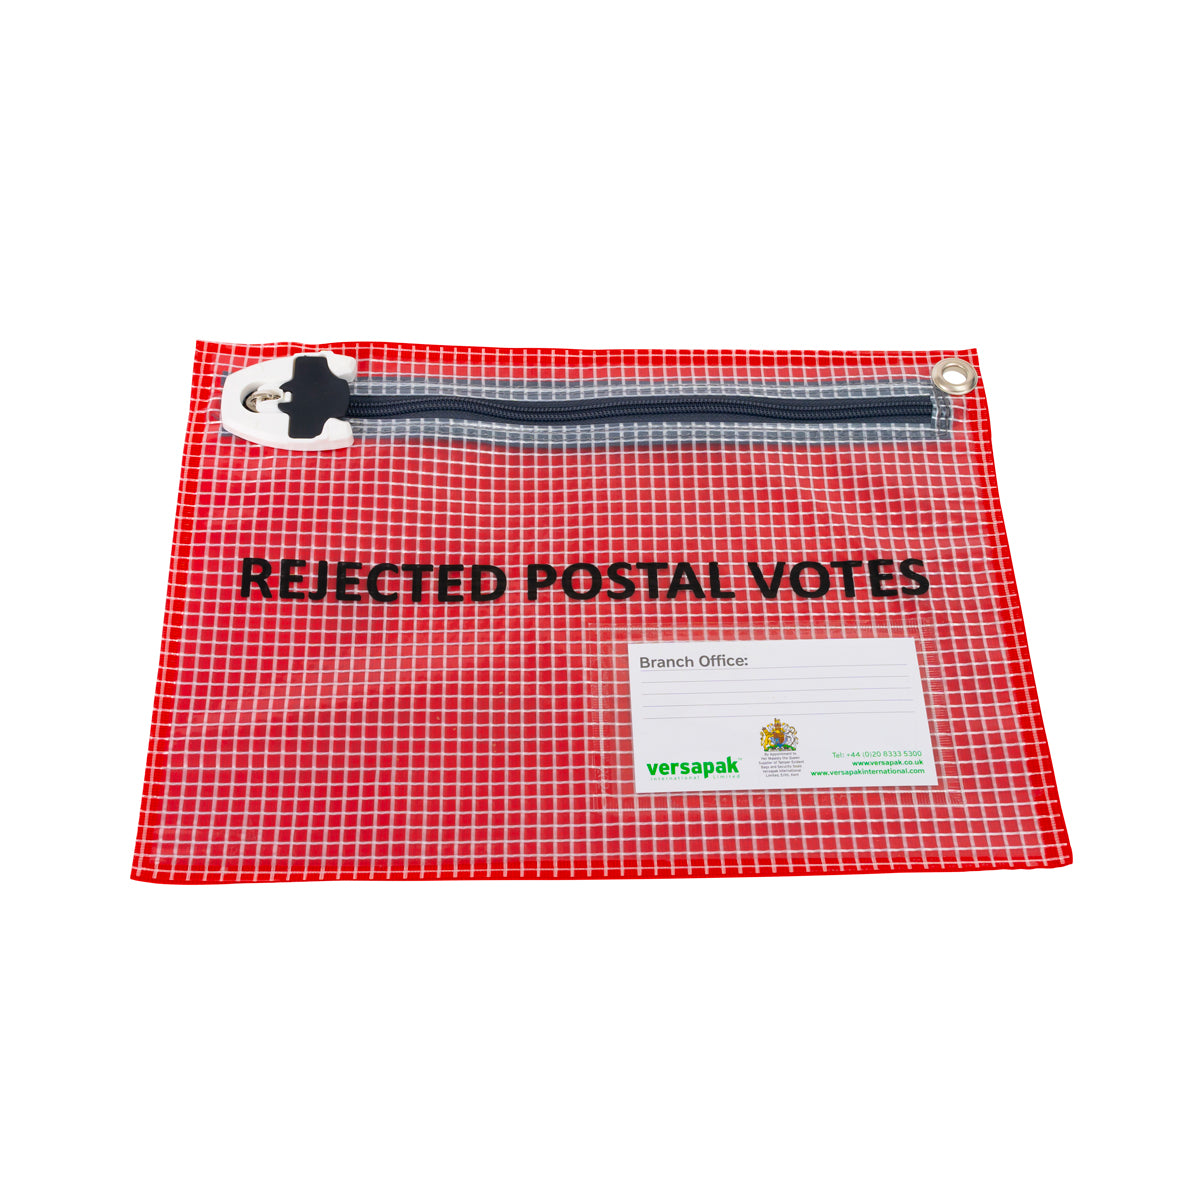 Secure Wallet for Rejected Postal Votes